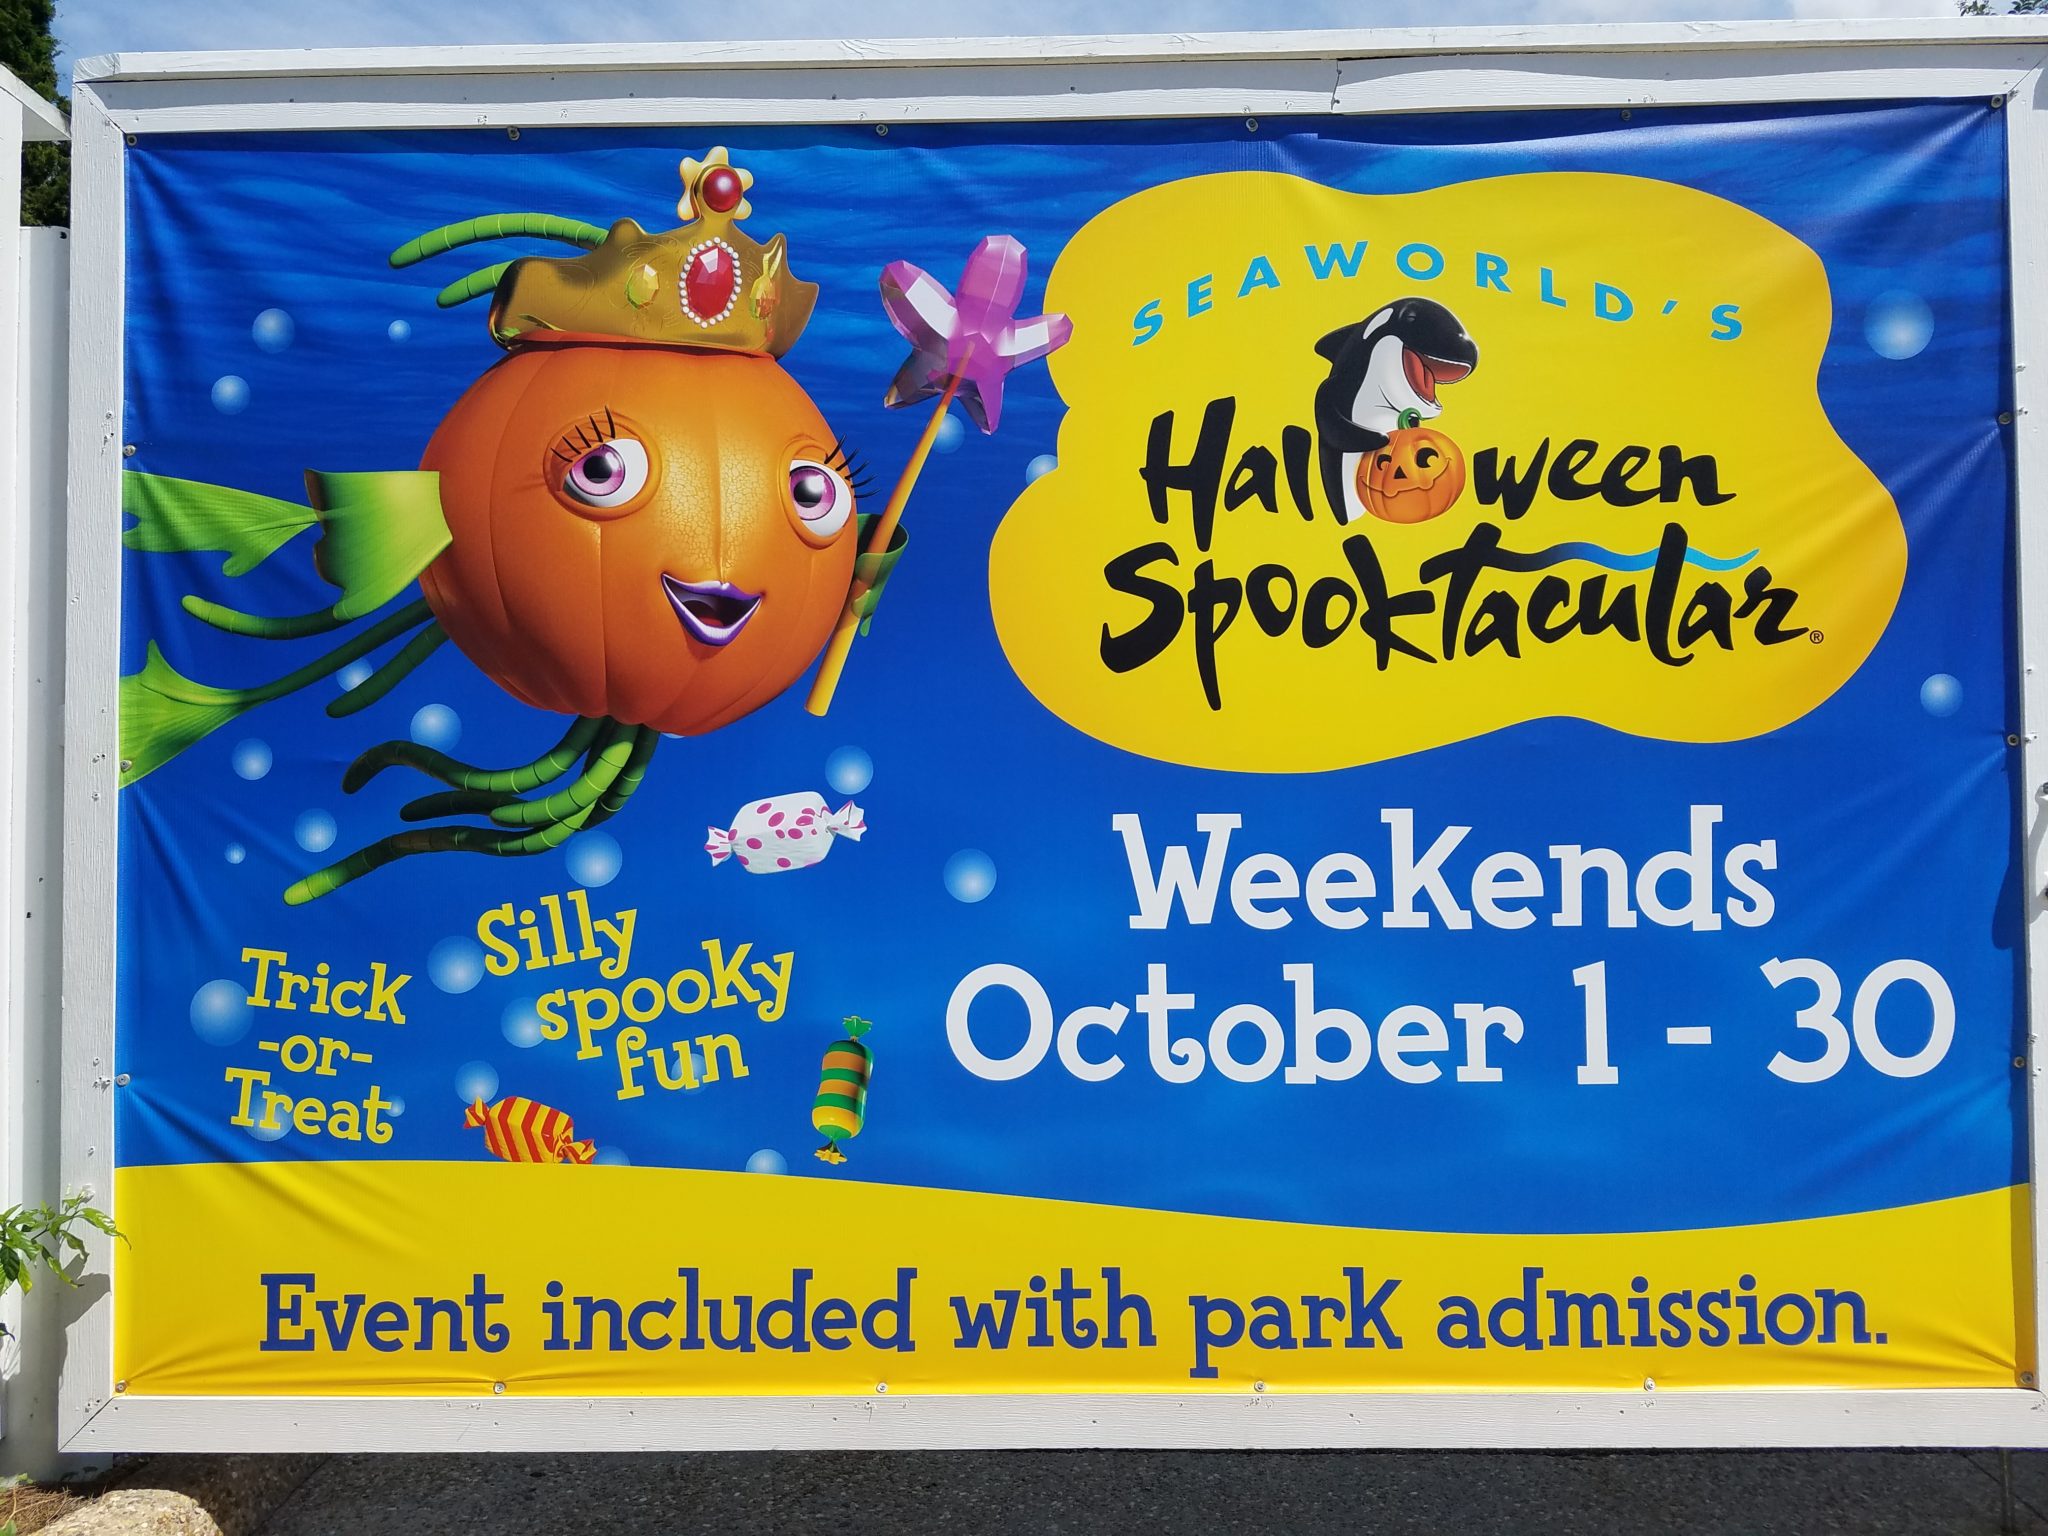 SeaWorld Orlando’s Spooktacular Event Review